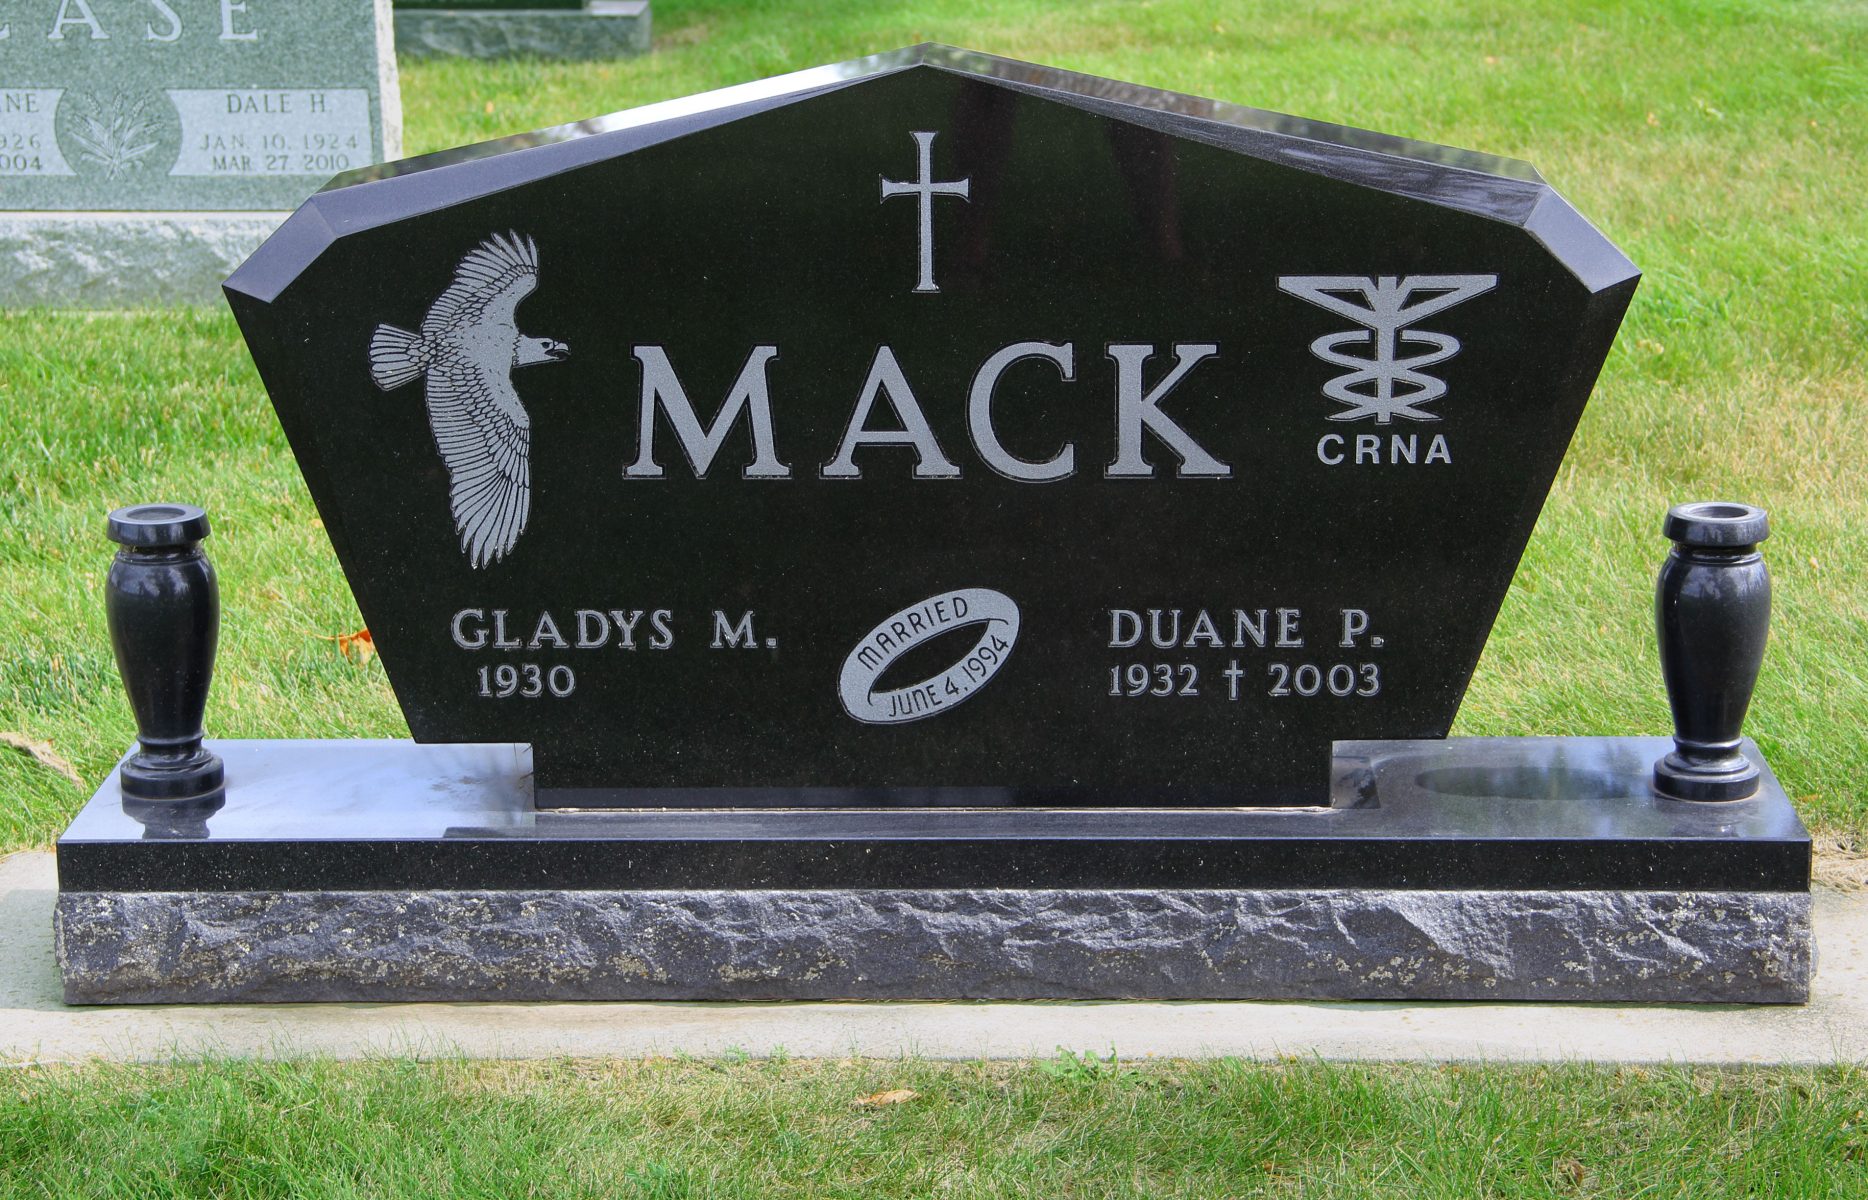 Mack Web